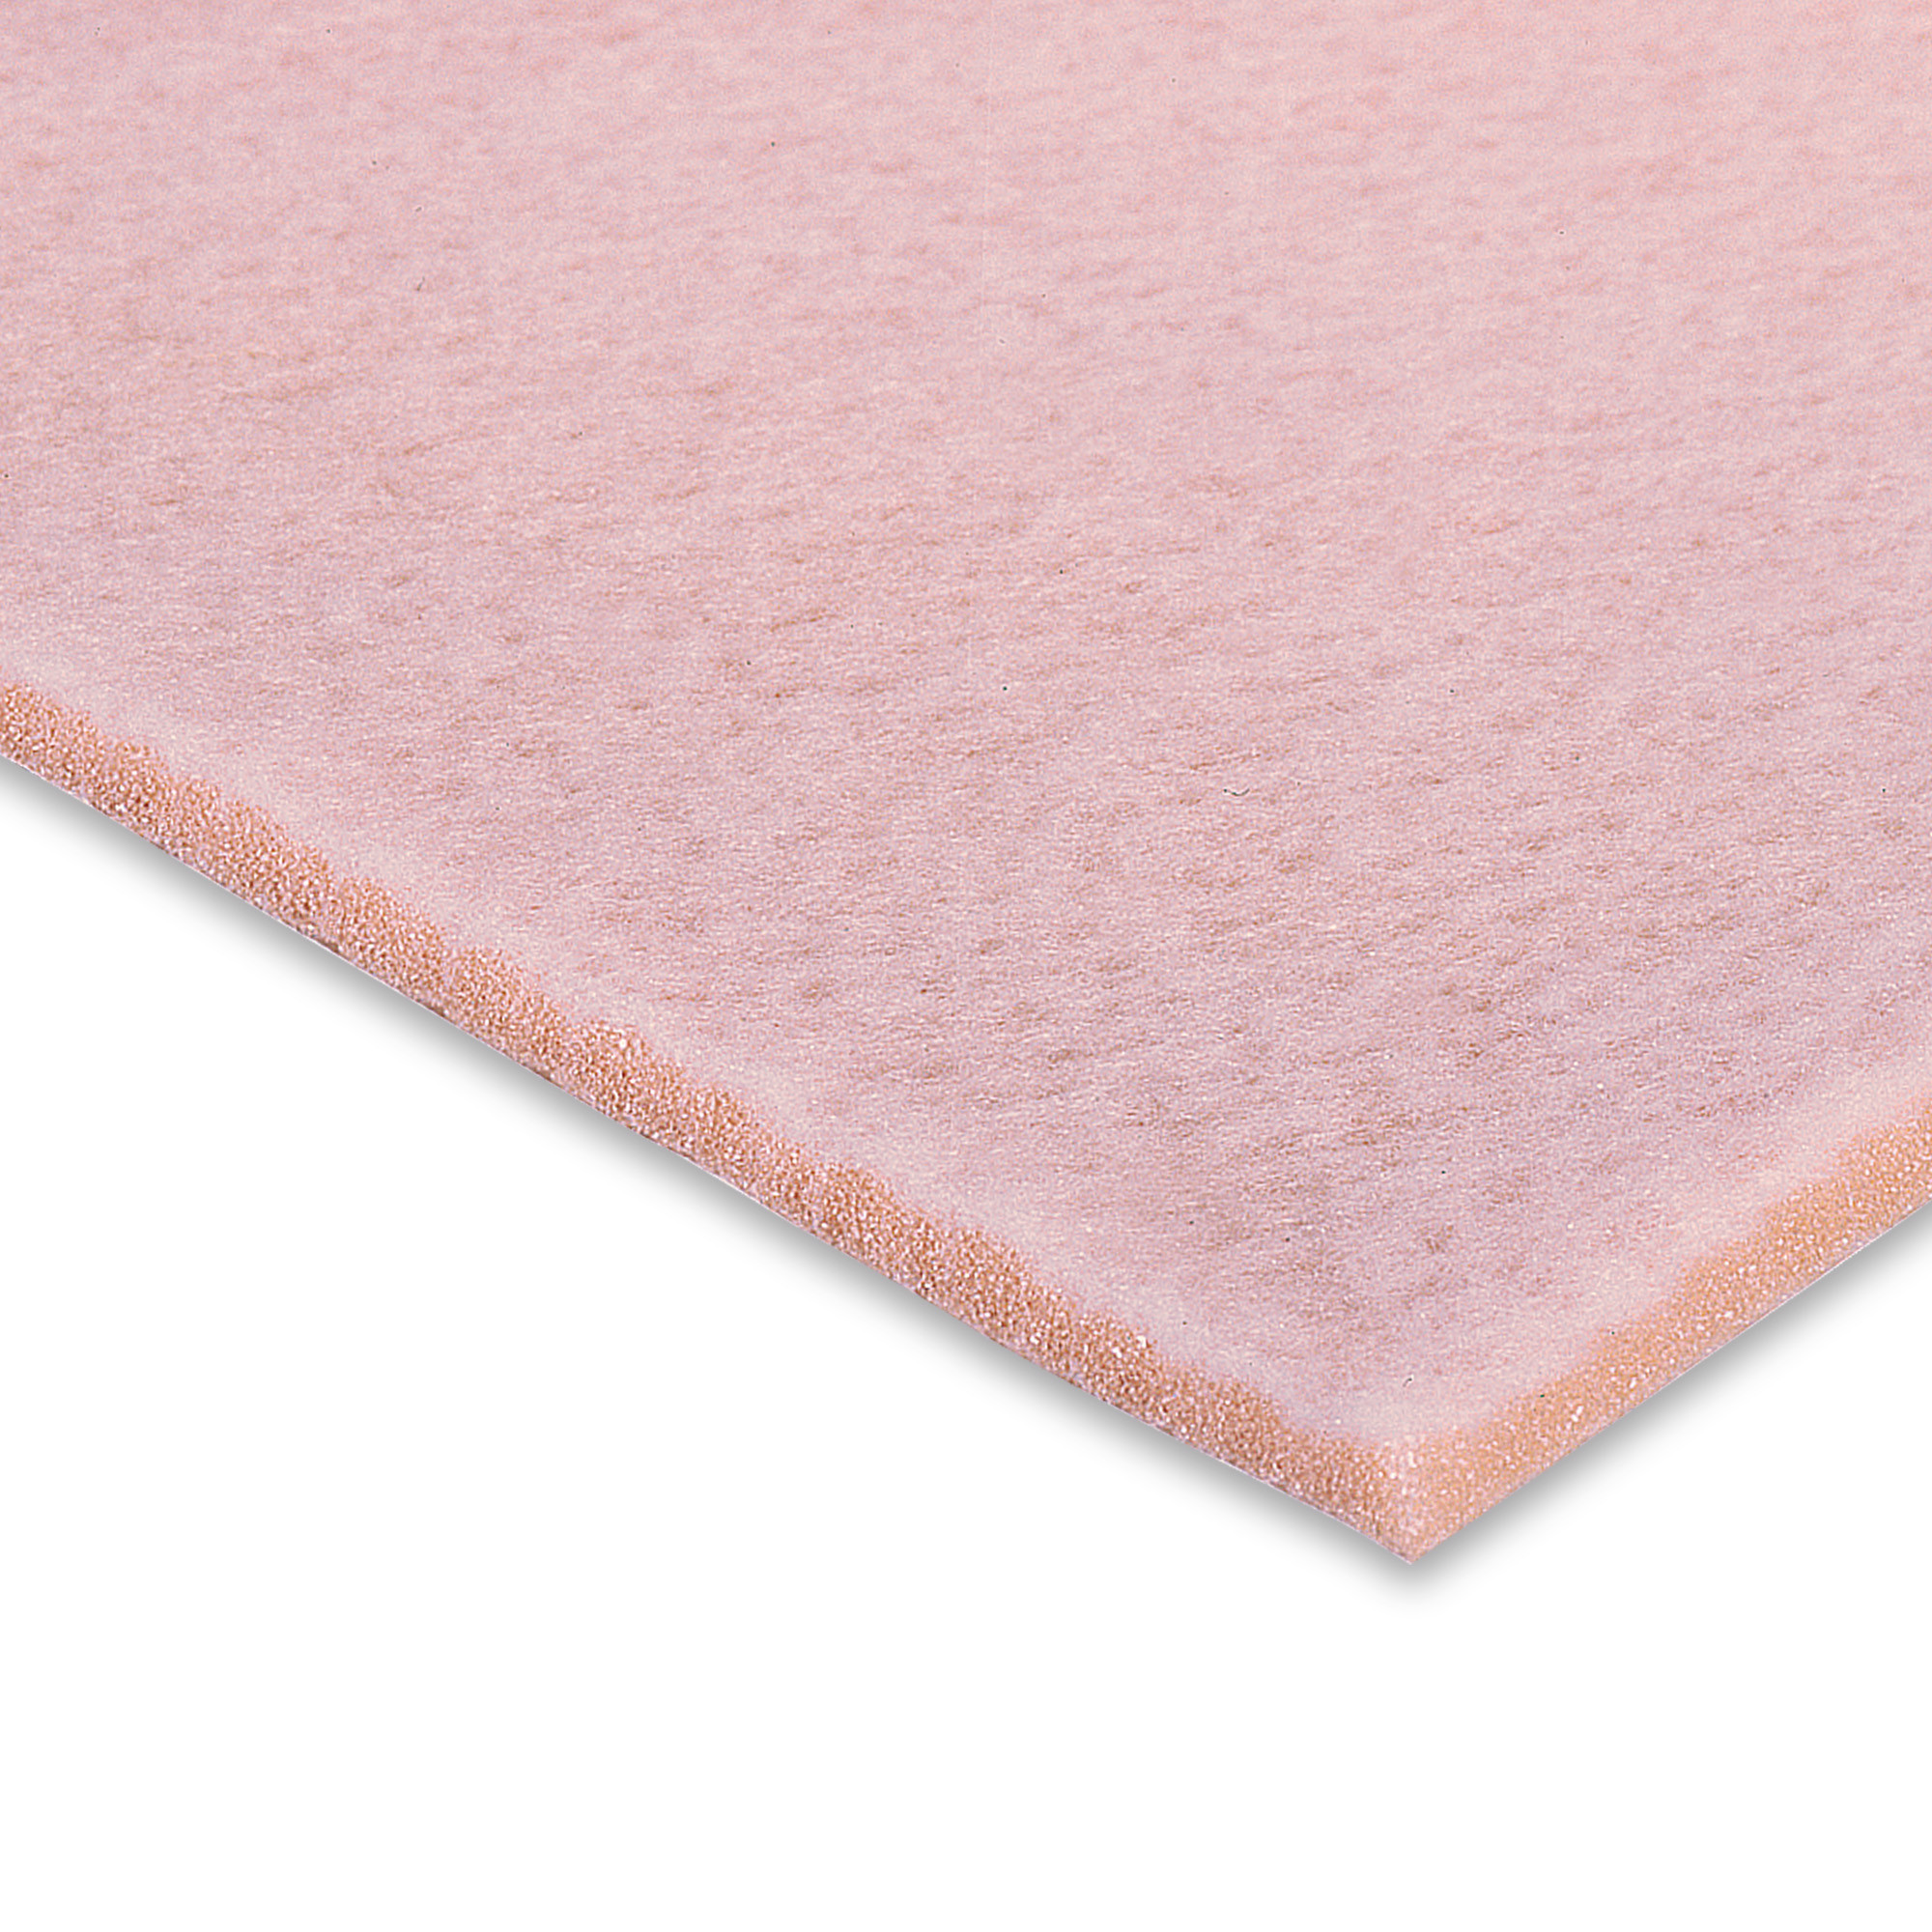 Mousse Hapla Fleecy Foam en polyuréthane 7 mm 22,5 x 45 cm Pack 4 plaques